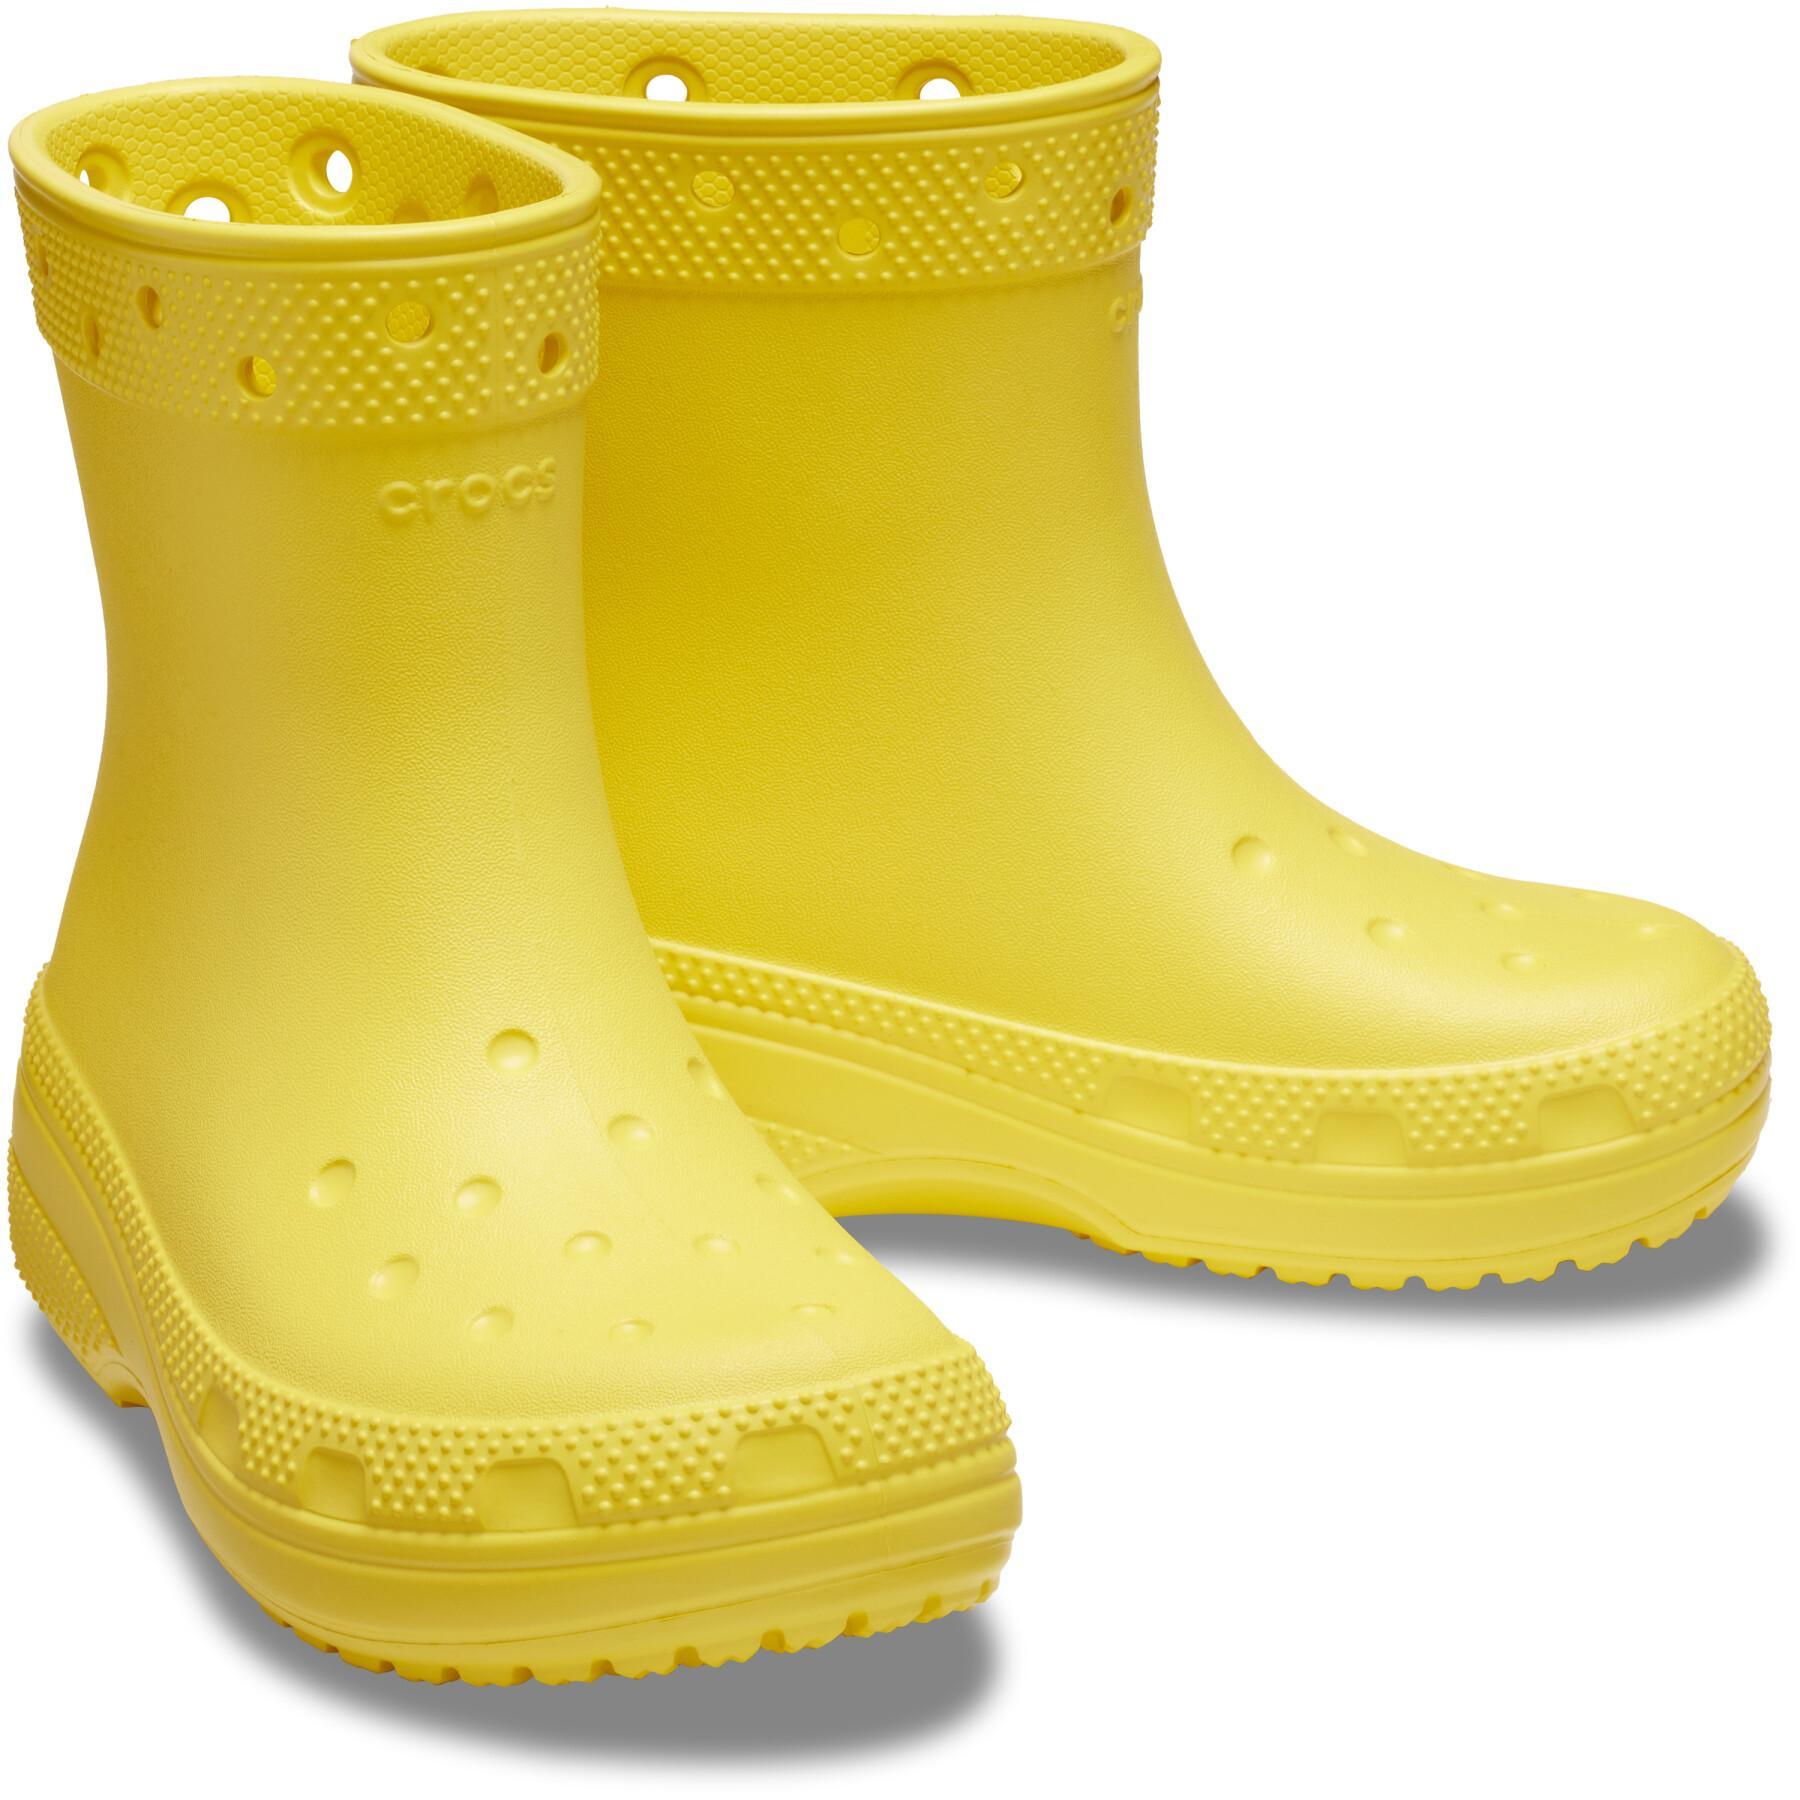 Botas de chuva para crianças Crocs Classic